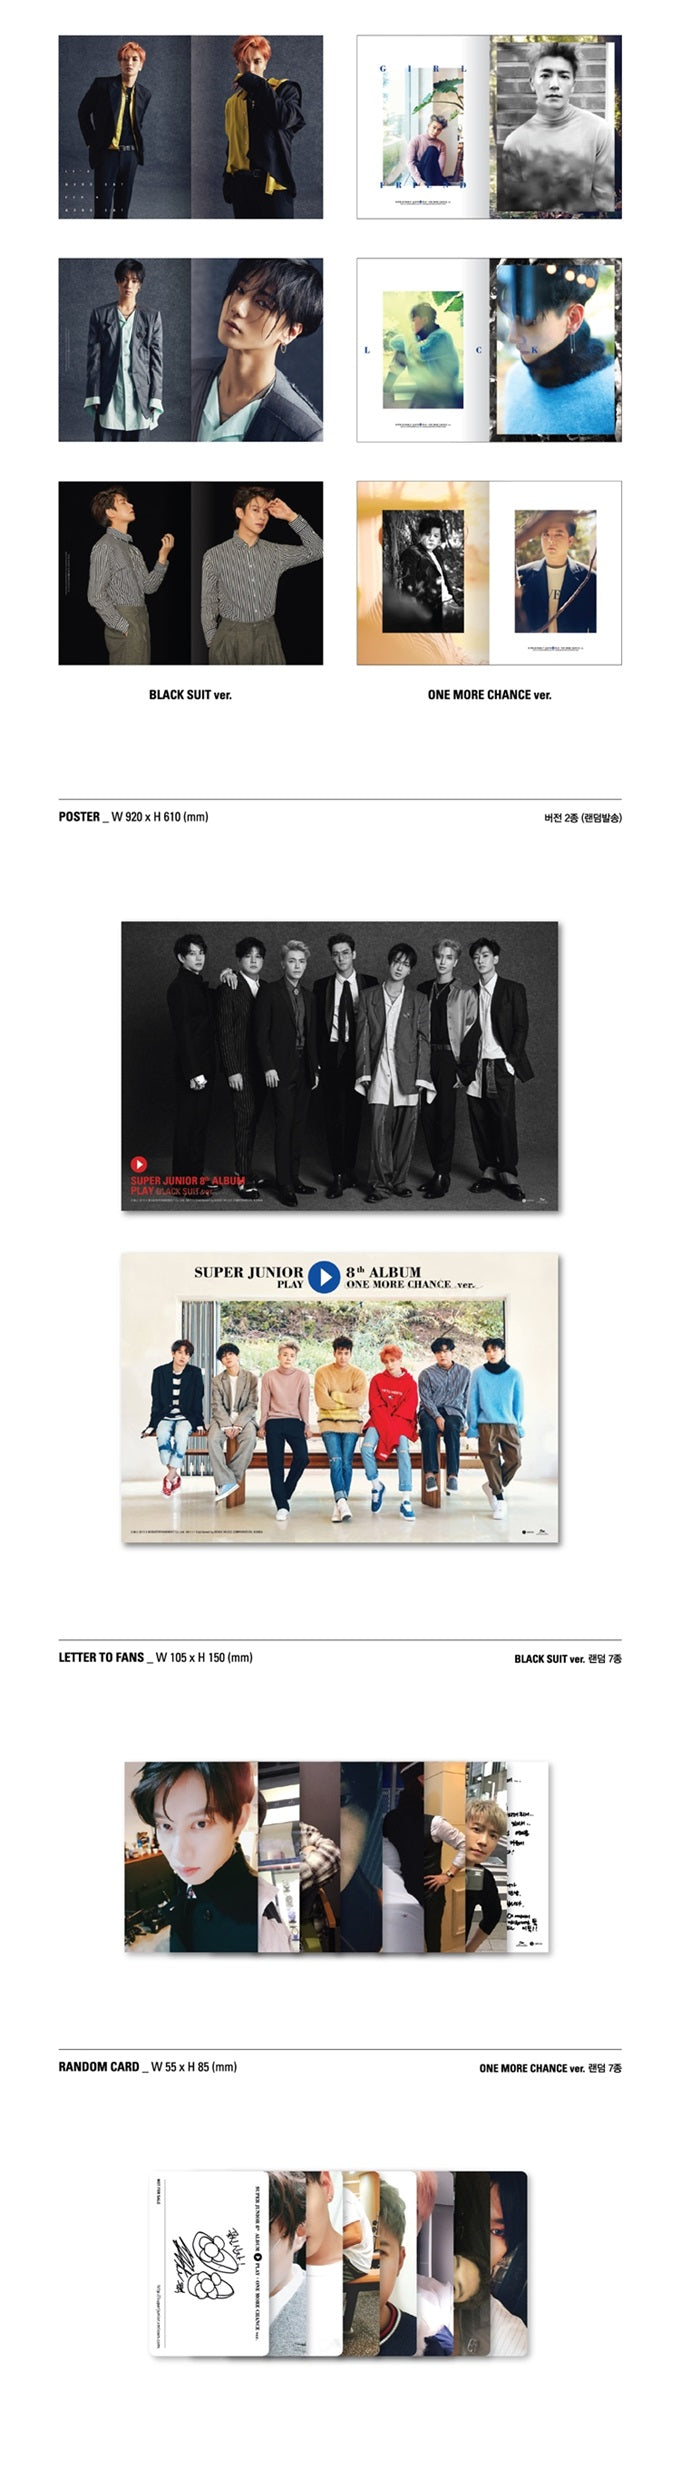 Super Junior 8th Album - Play